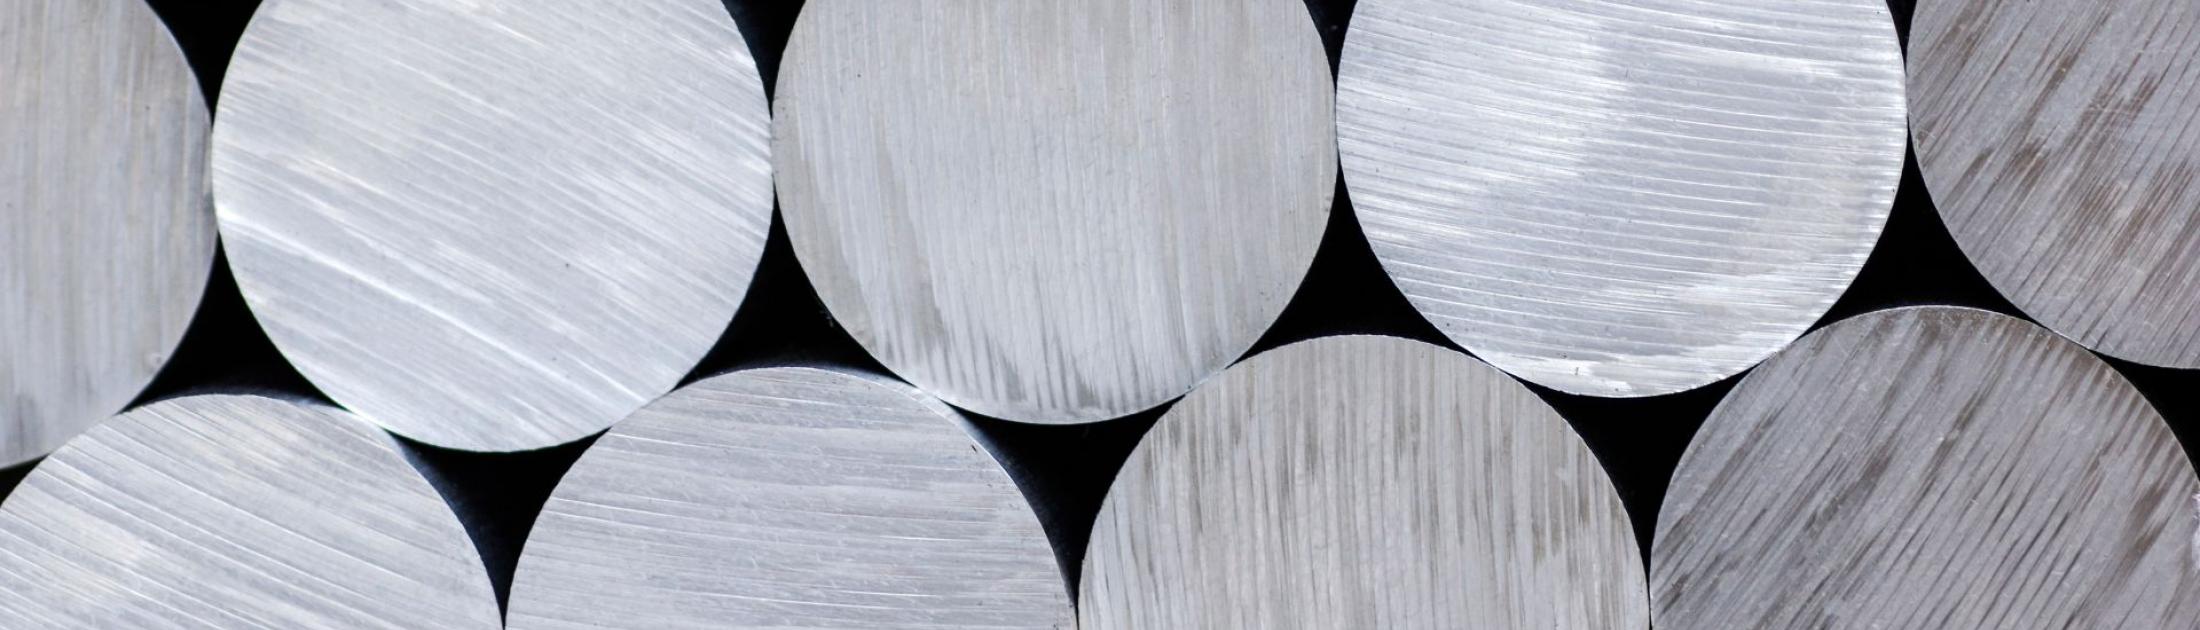 Aluminium : une ressource abondante à l’orée de sa pénurie ?